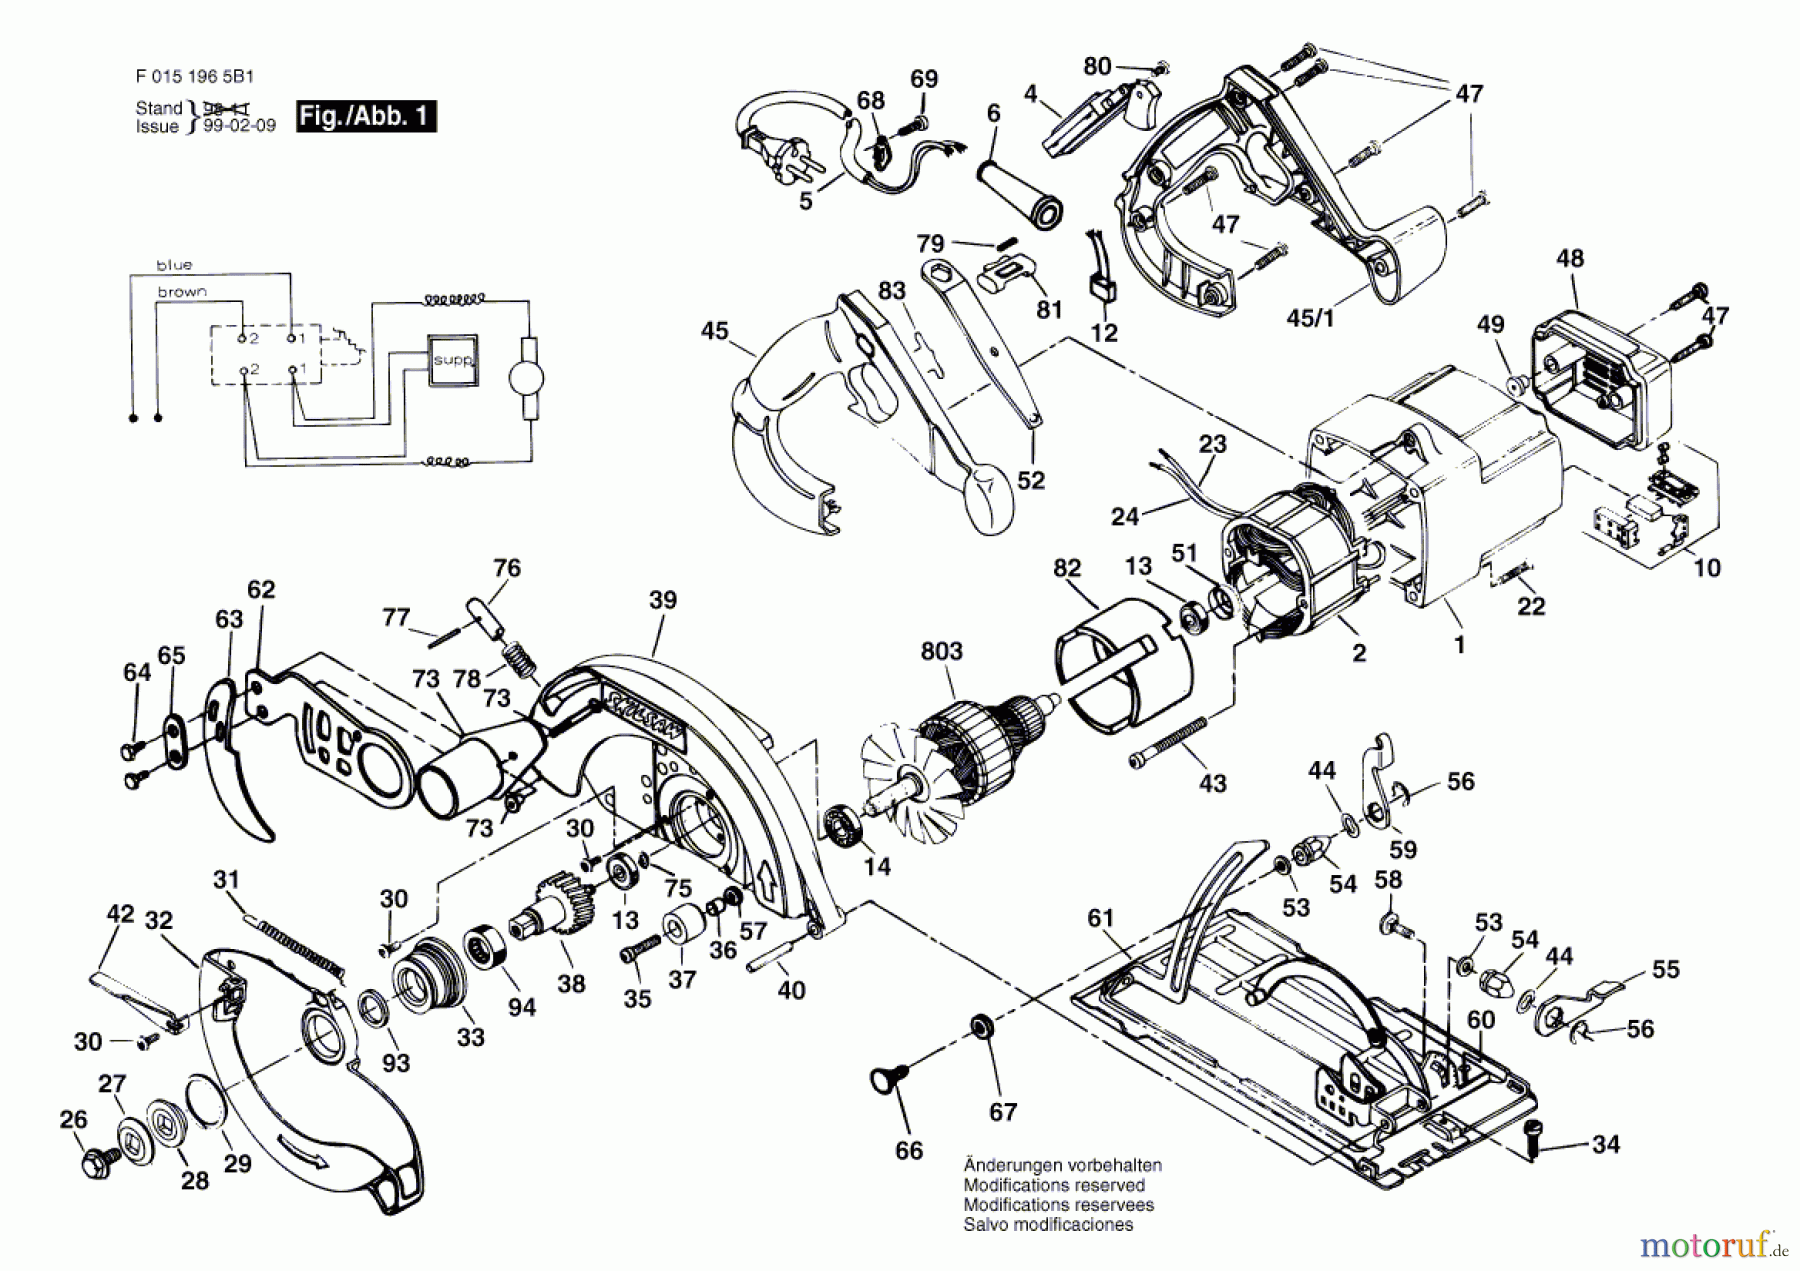  Bosch Werkzeug Gw-Handkreissäge 1965U1 Seite 1